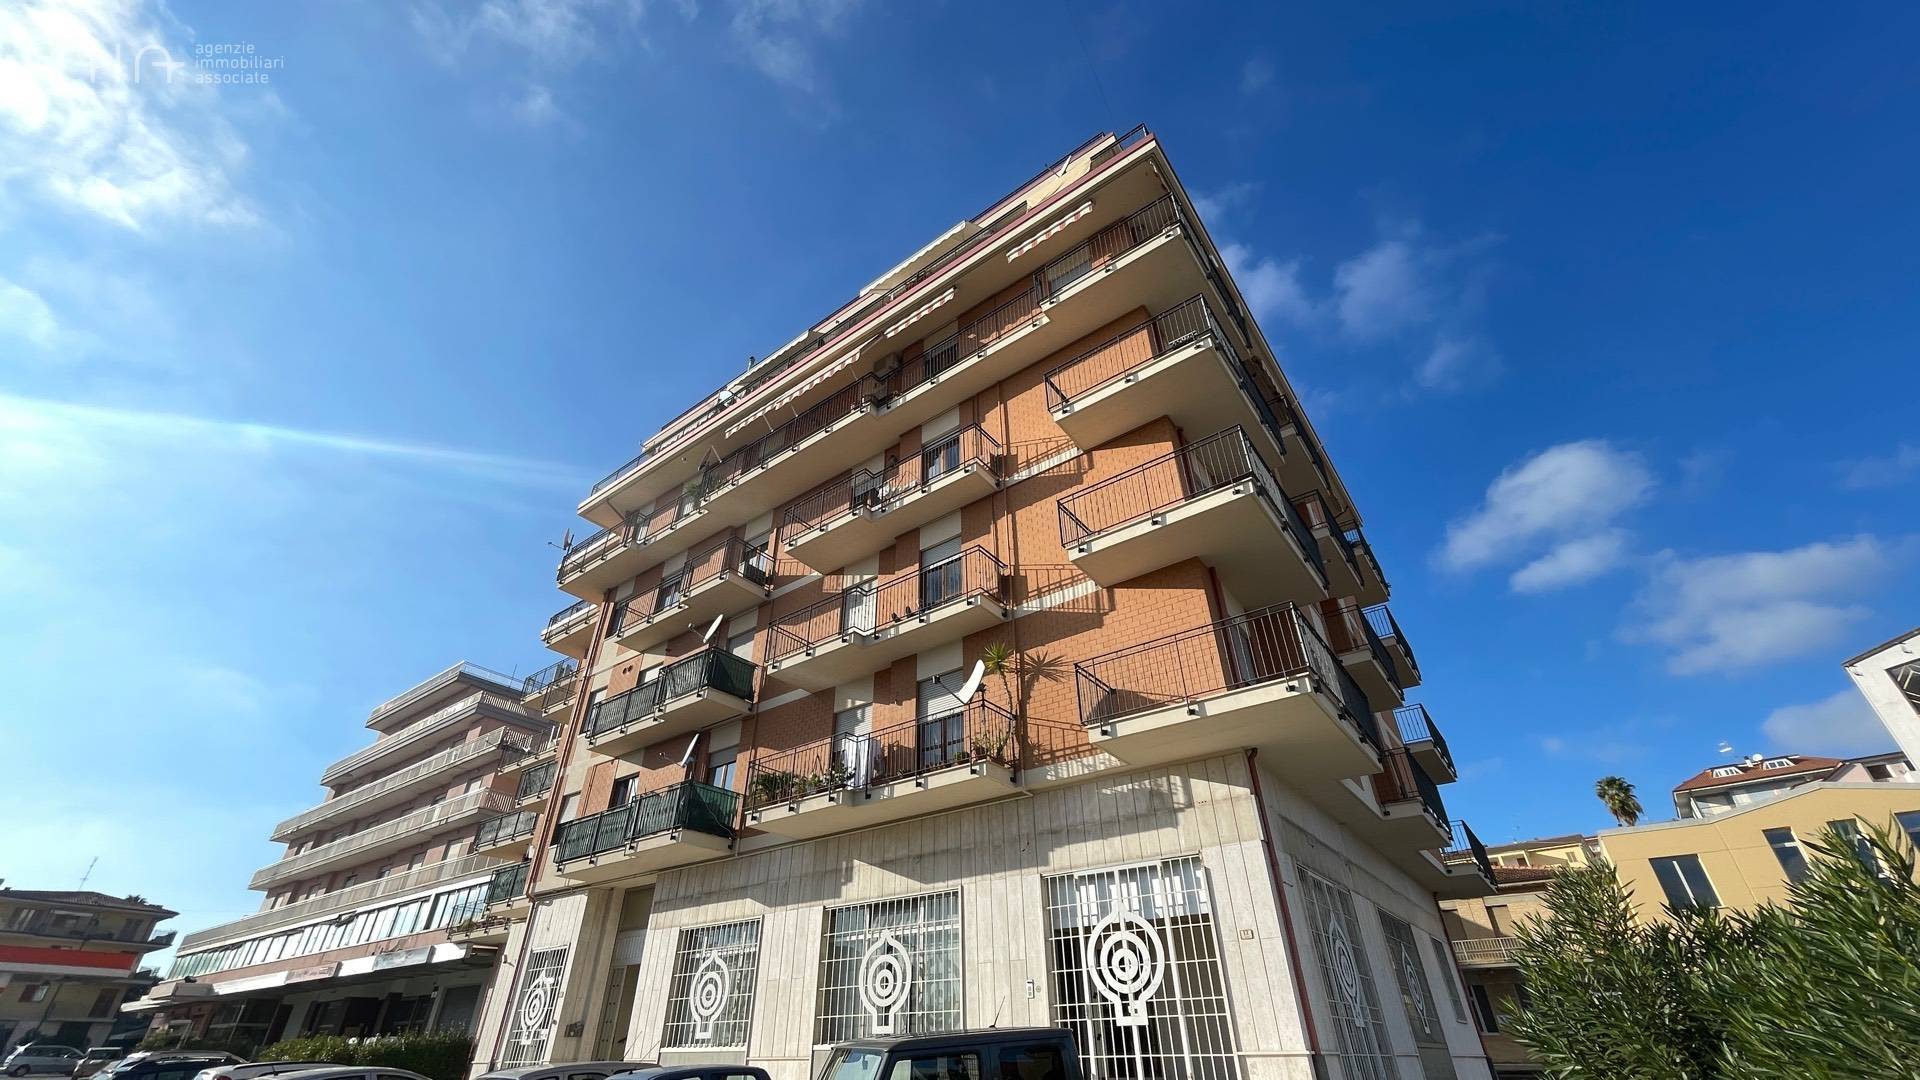 Appartamento in vendita a Monsampolo del Tronto, 7 locali, zona Località: StelladiMonsampolo, prezzo € 220.000 | PortaleAgenzieImmobiliari.it